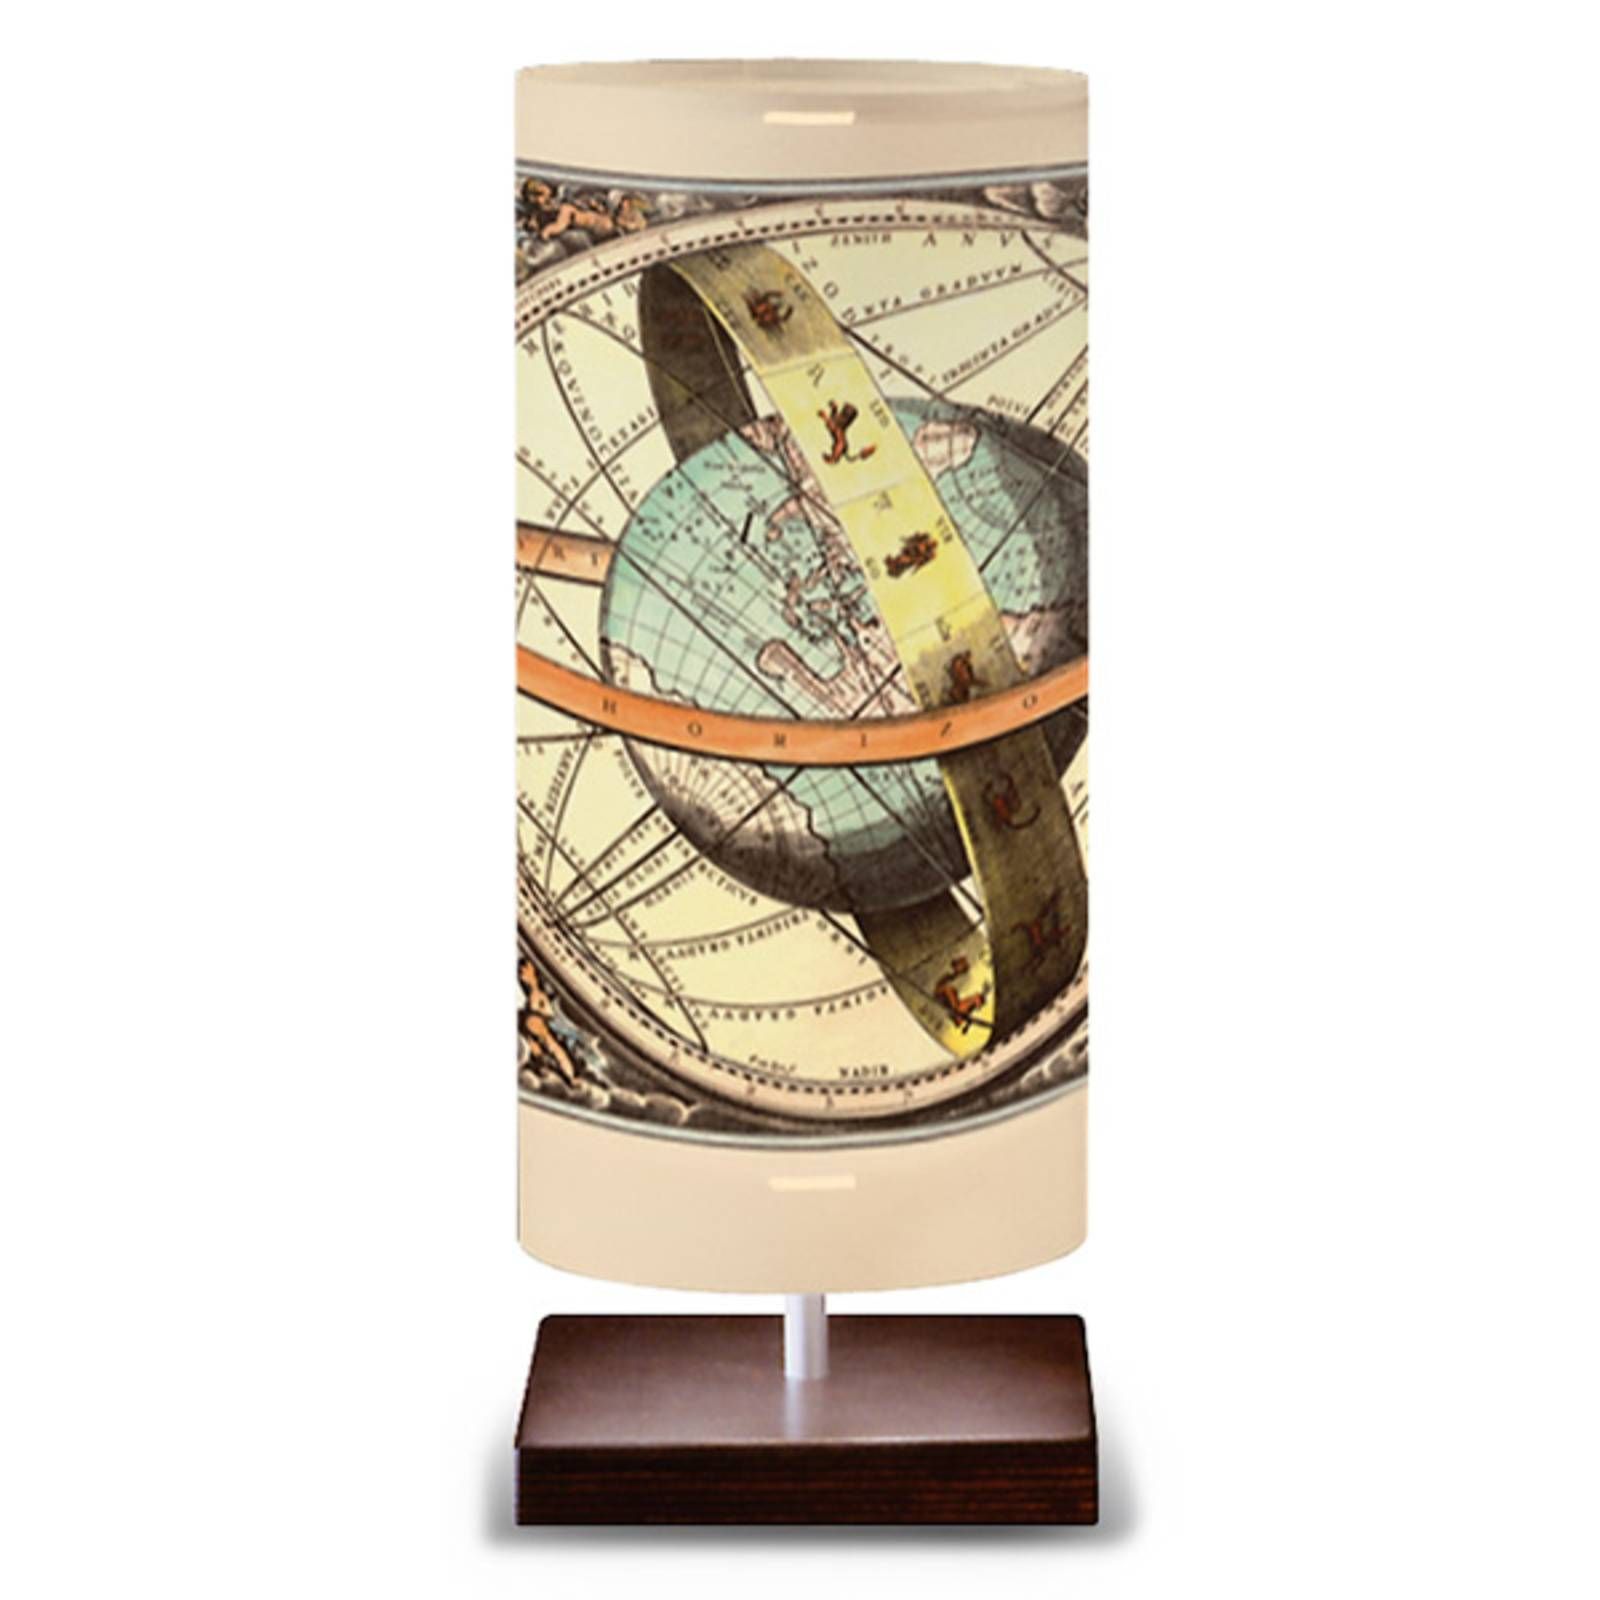 Artempo Italia Globe – stolná lampa v dizajne glóbusu, Chodba, plast, kov, E27, 25W, K: 39cm